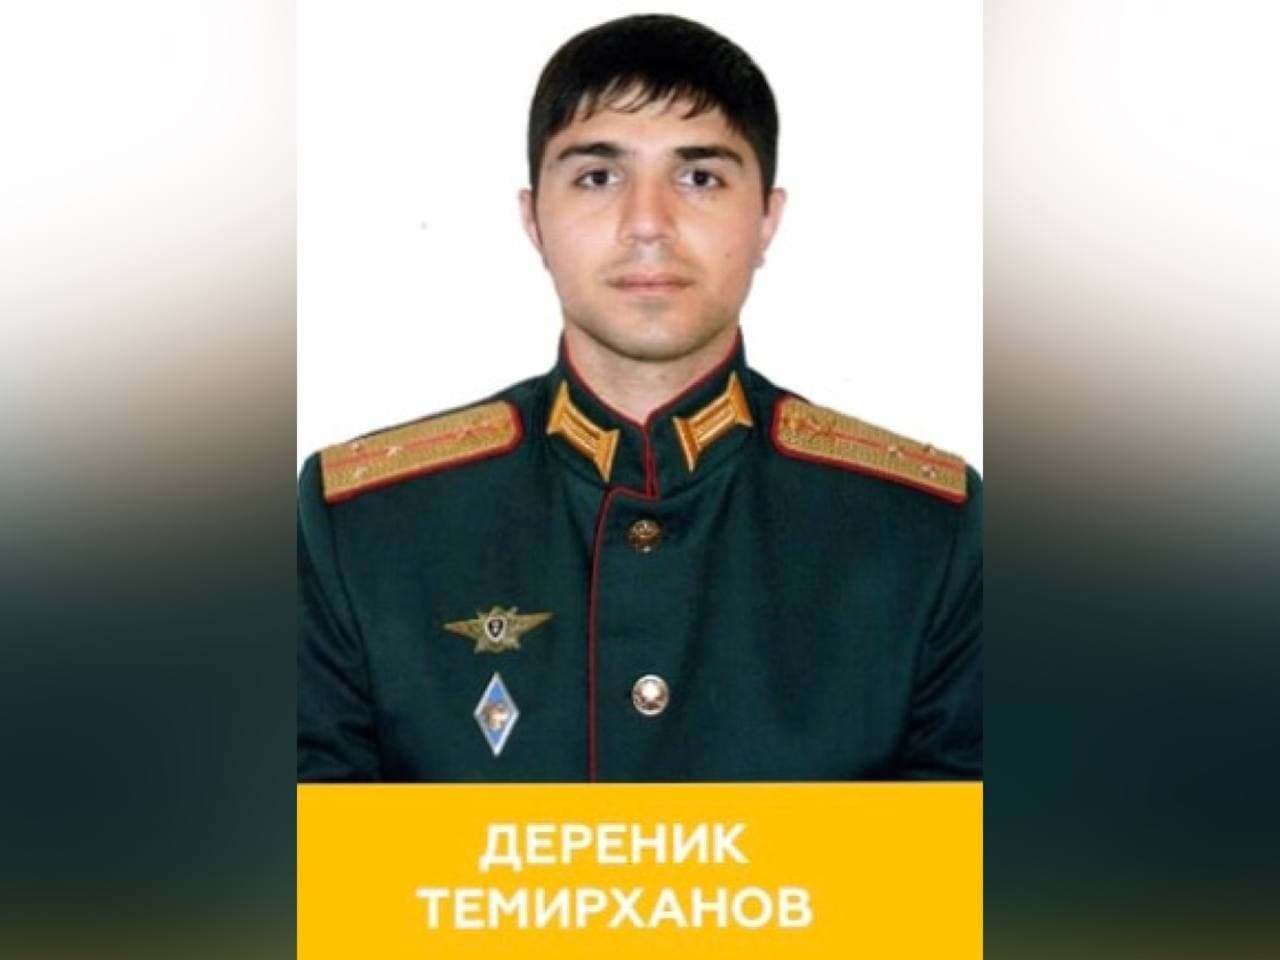 Командир мотострелкового батальона Дереник Темирханов. Фото © Минобороны РФ